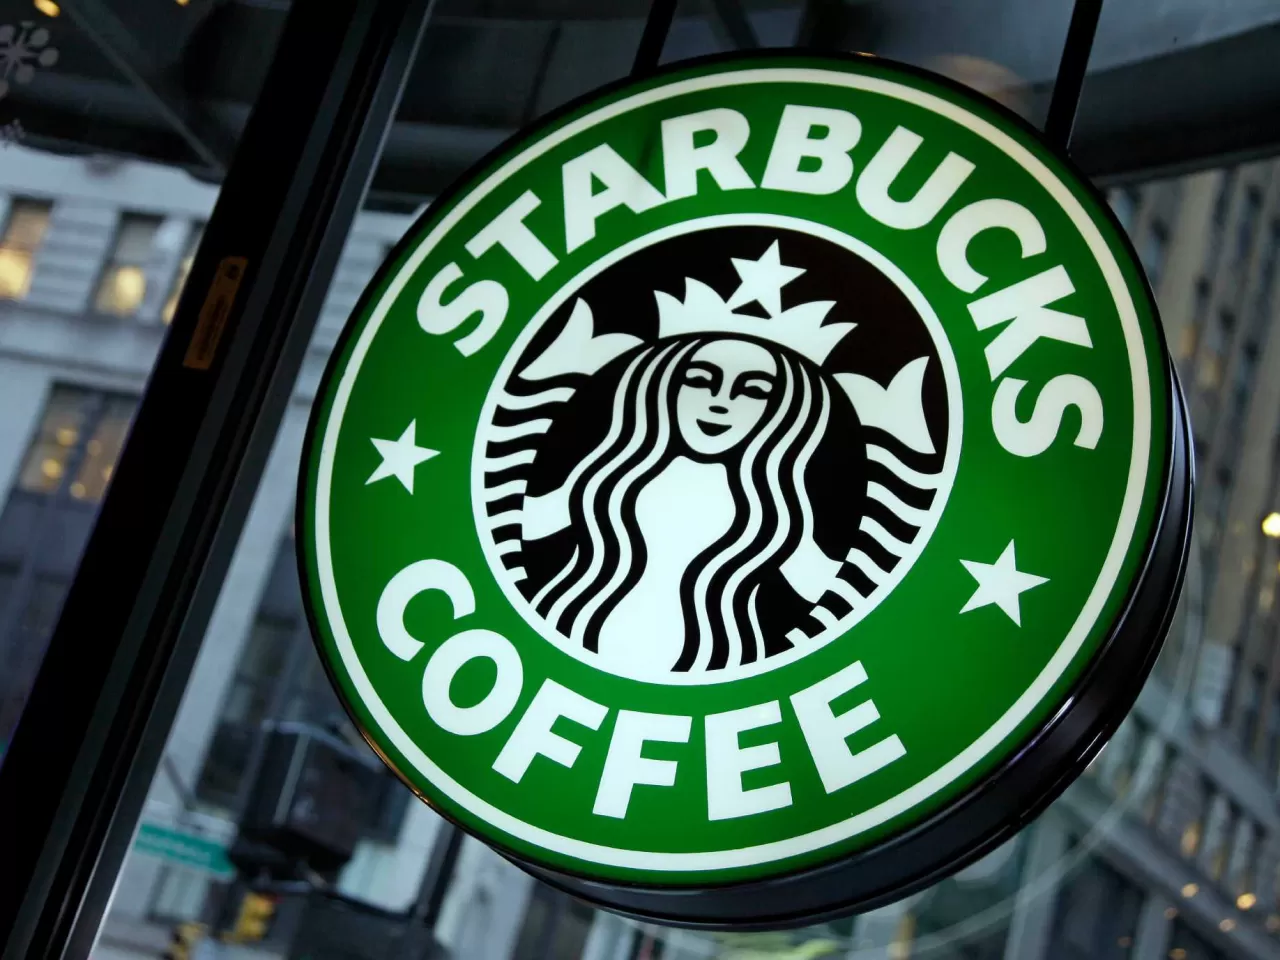 Starbucks Kahveleri İsimleri ve Özellikleri